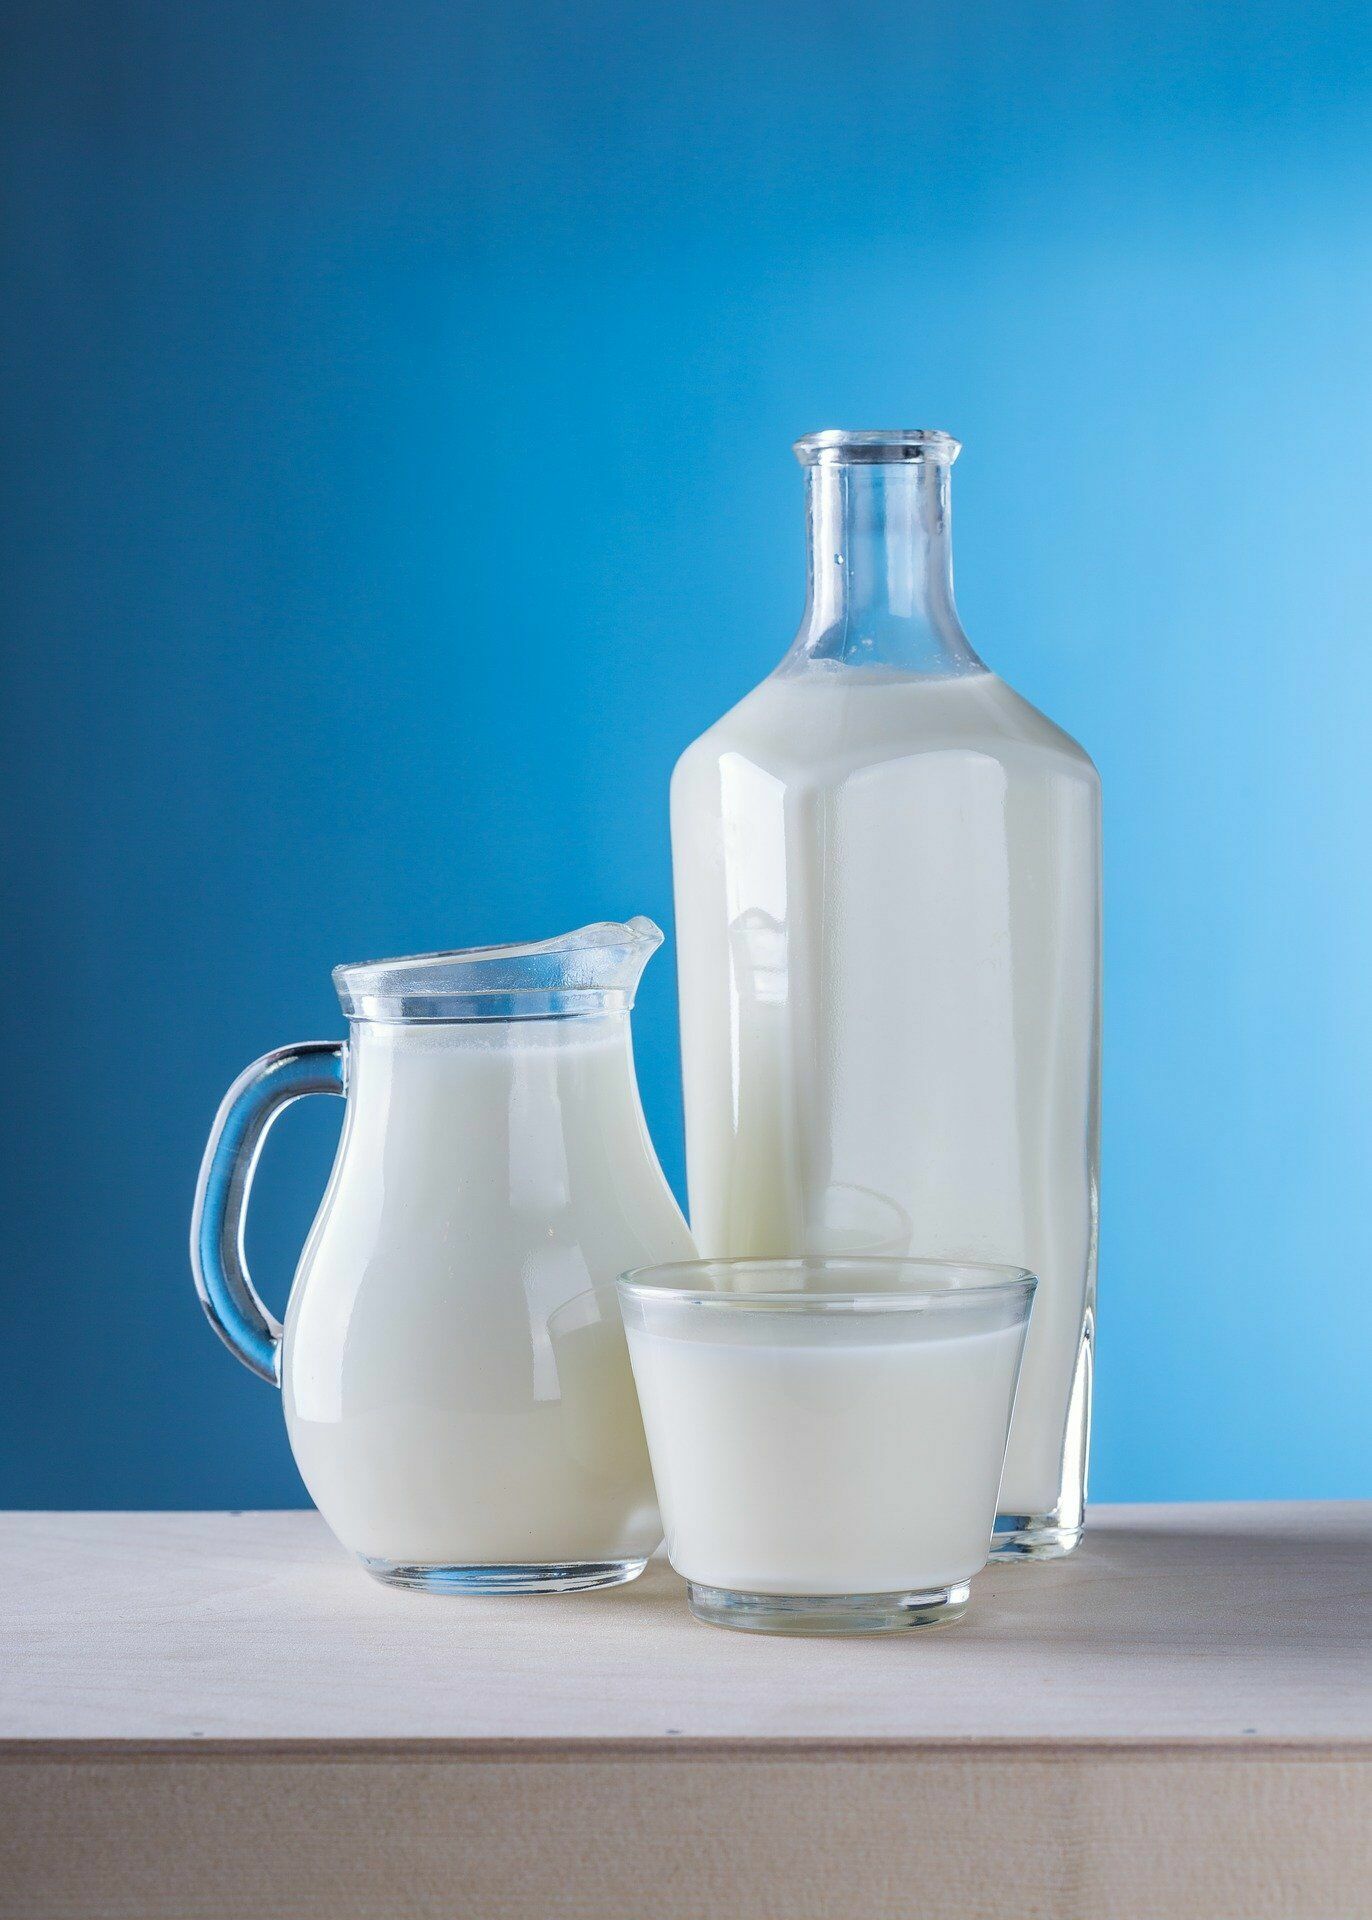 Ученые выяснили, что жирное молоко предотвращает сердечно-сосудистые заболевания